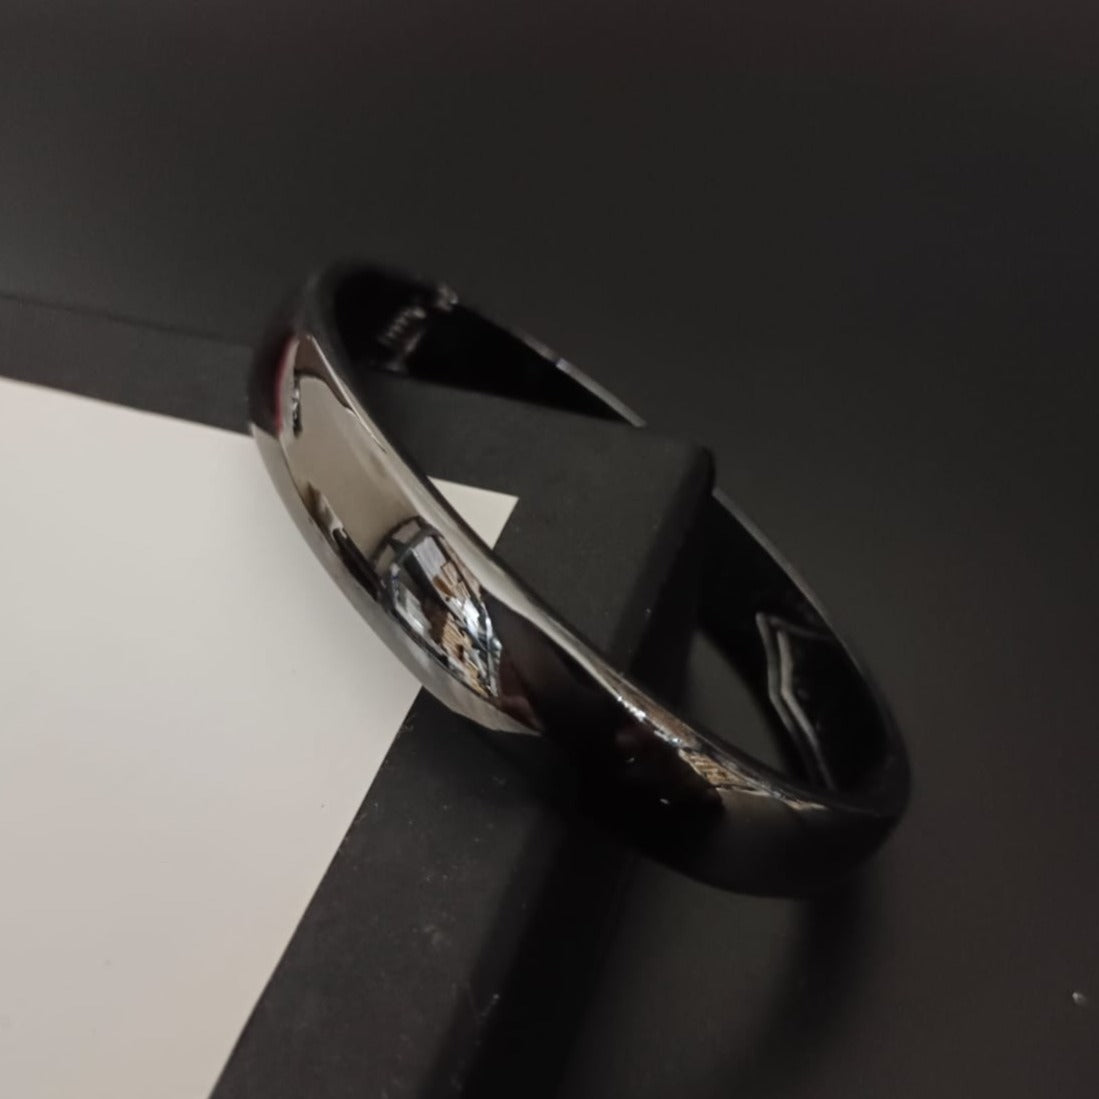 New Chrome Finish Black Kada Bracelet For Men and Women Jack Marc